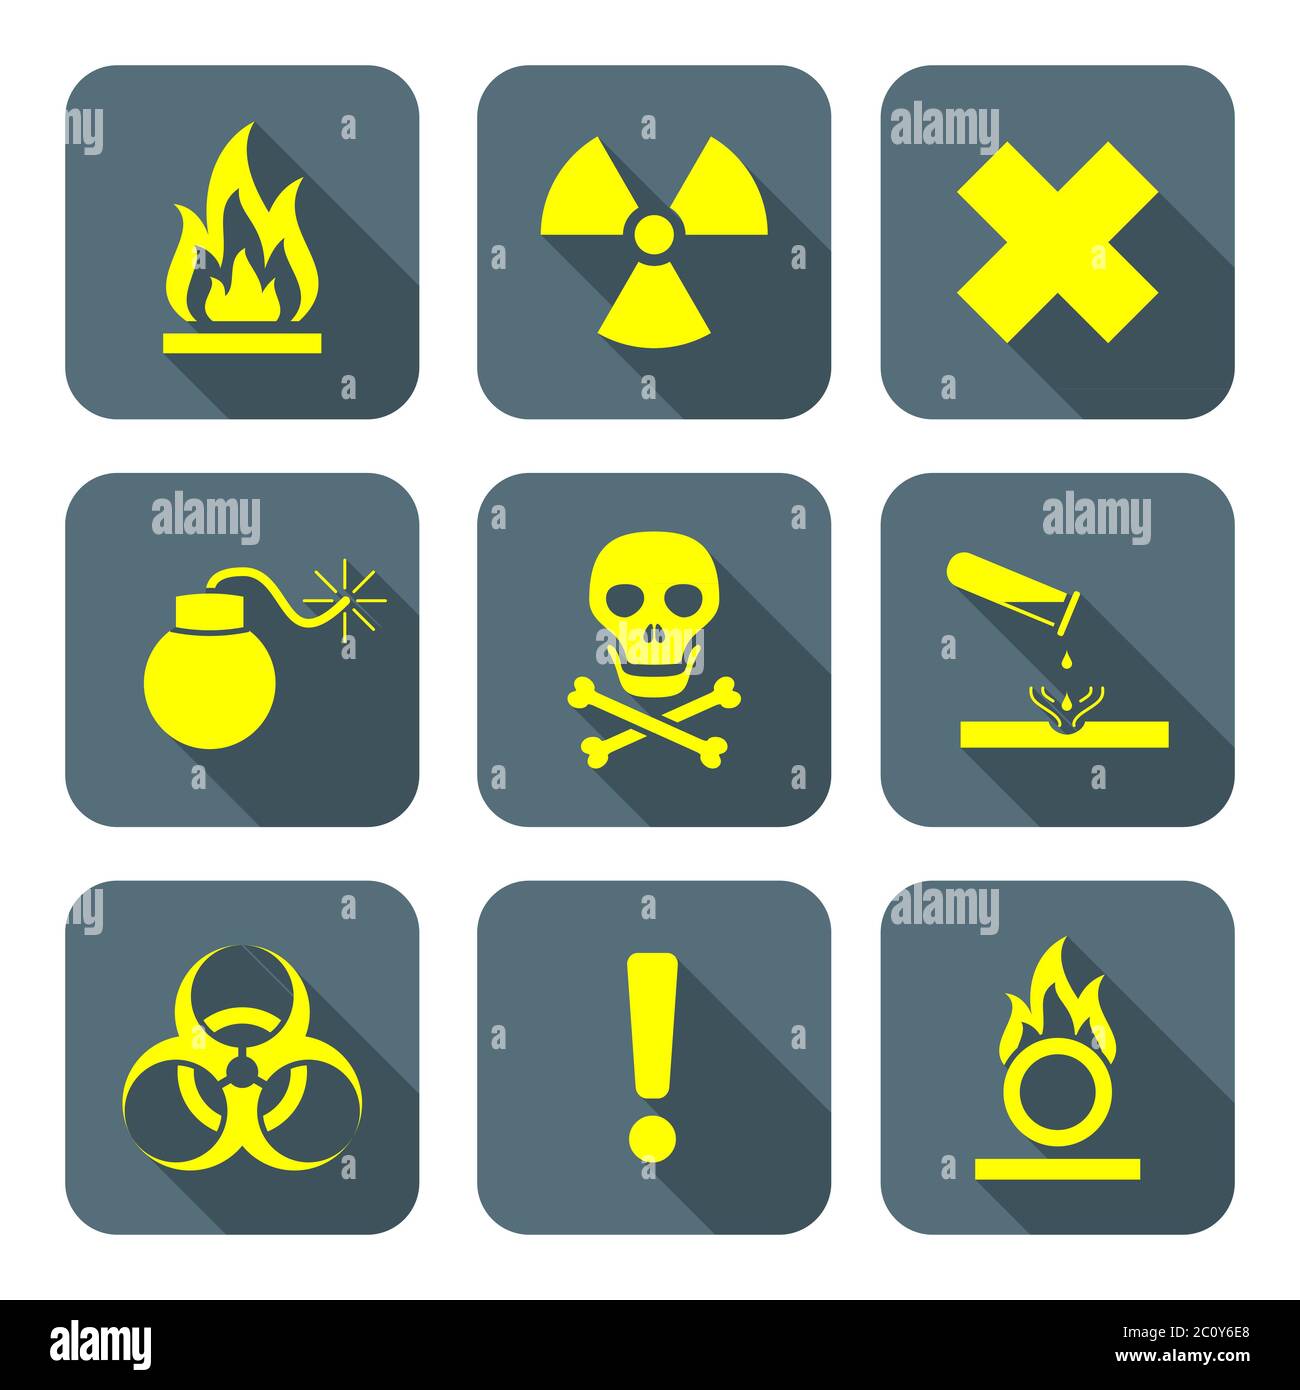 simboli di rifiuti pericolosi di colore giallo brillante stile piatto simboli di avvertenza icone grigie Foto Stock